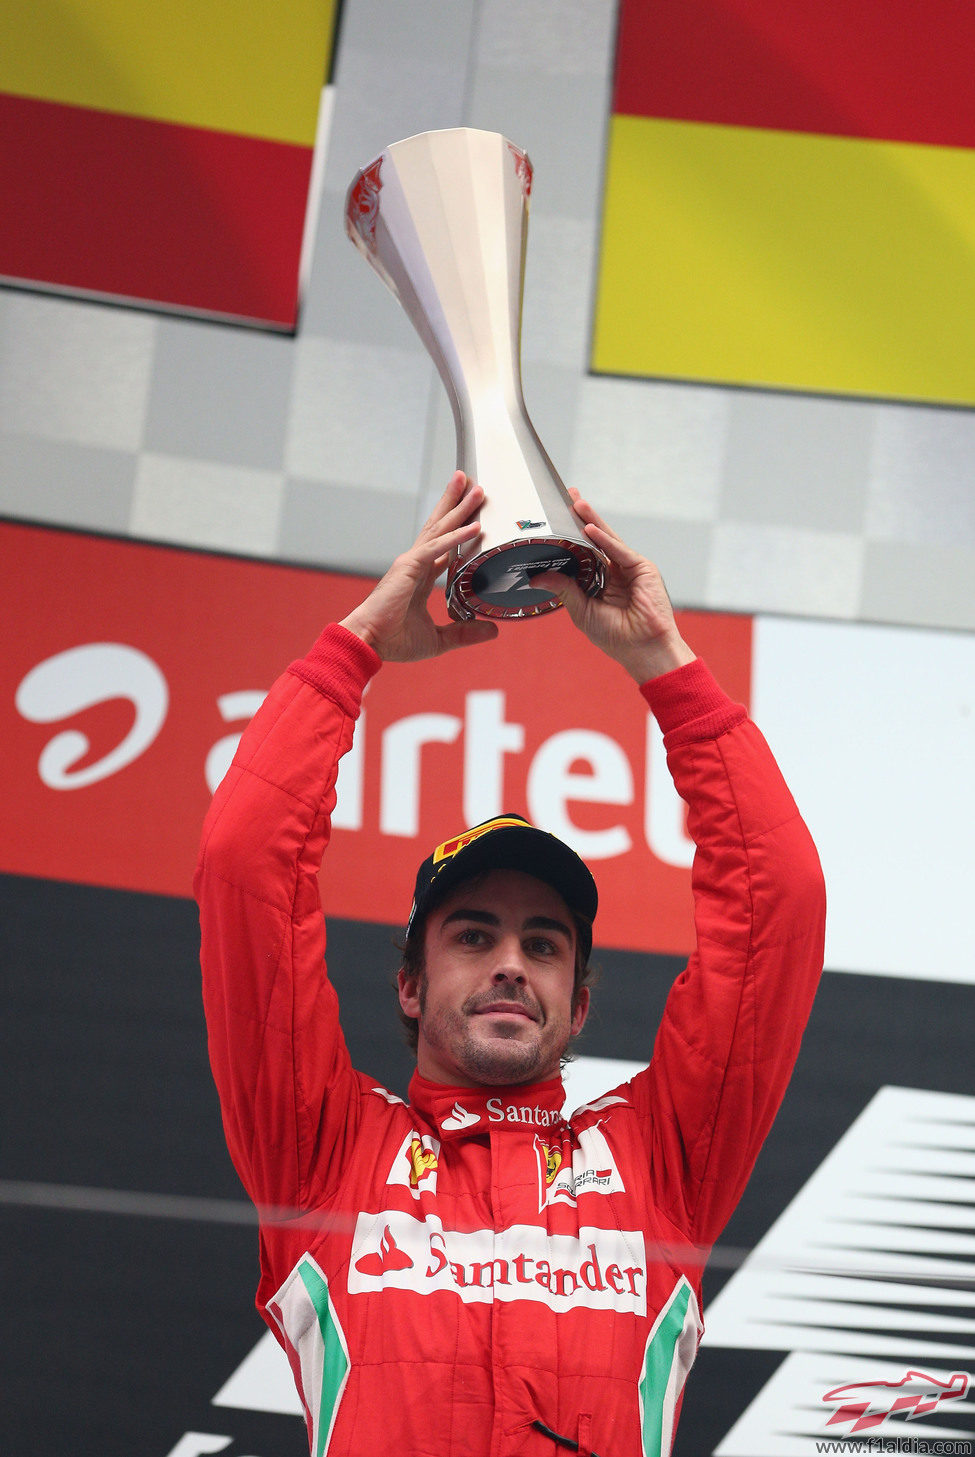 Fernando Alonso levanta su trofeo de segundo en el GP de India 2012